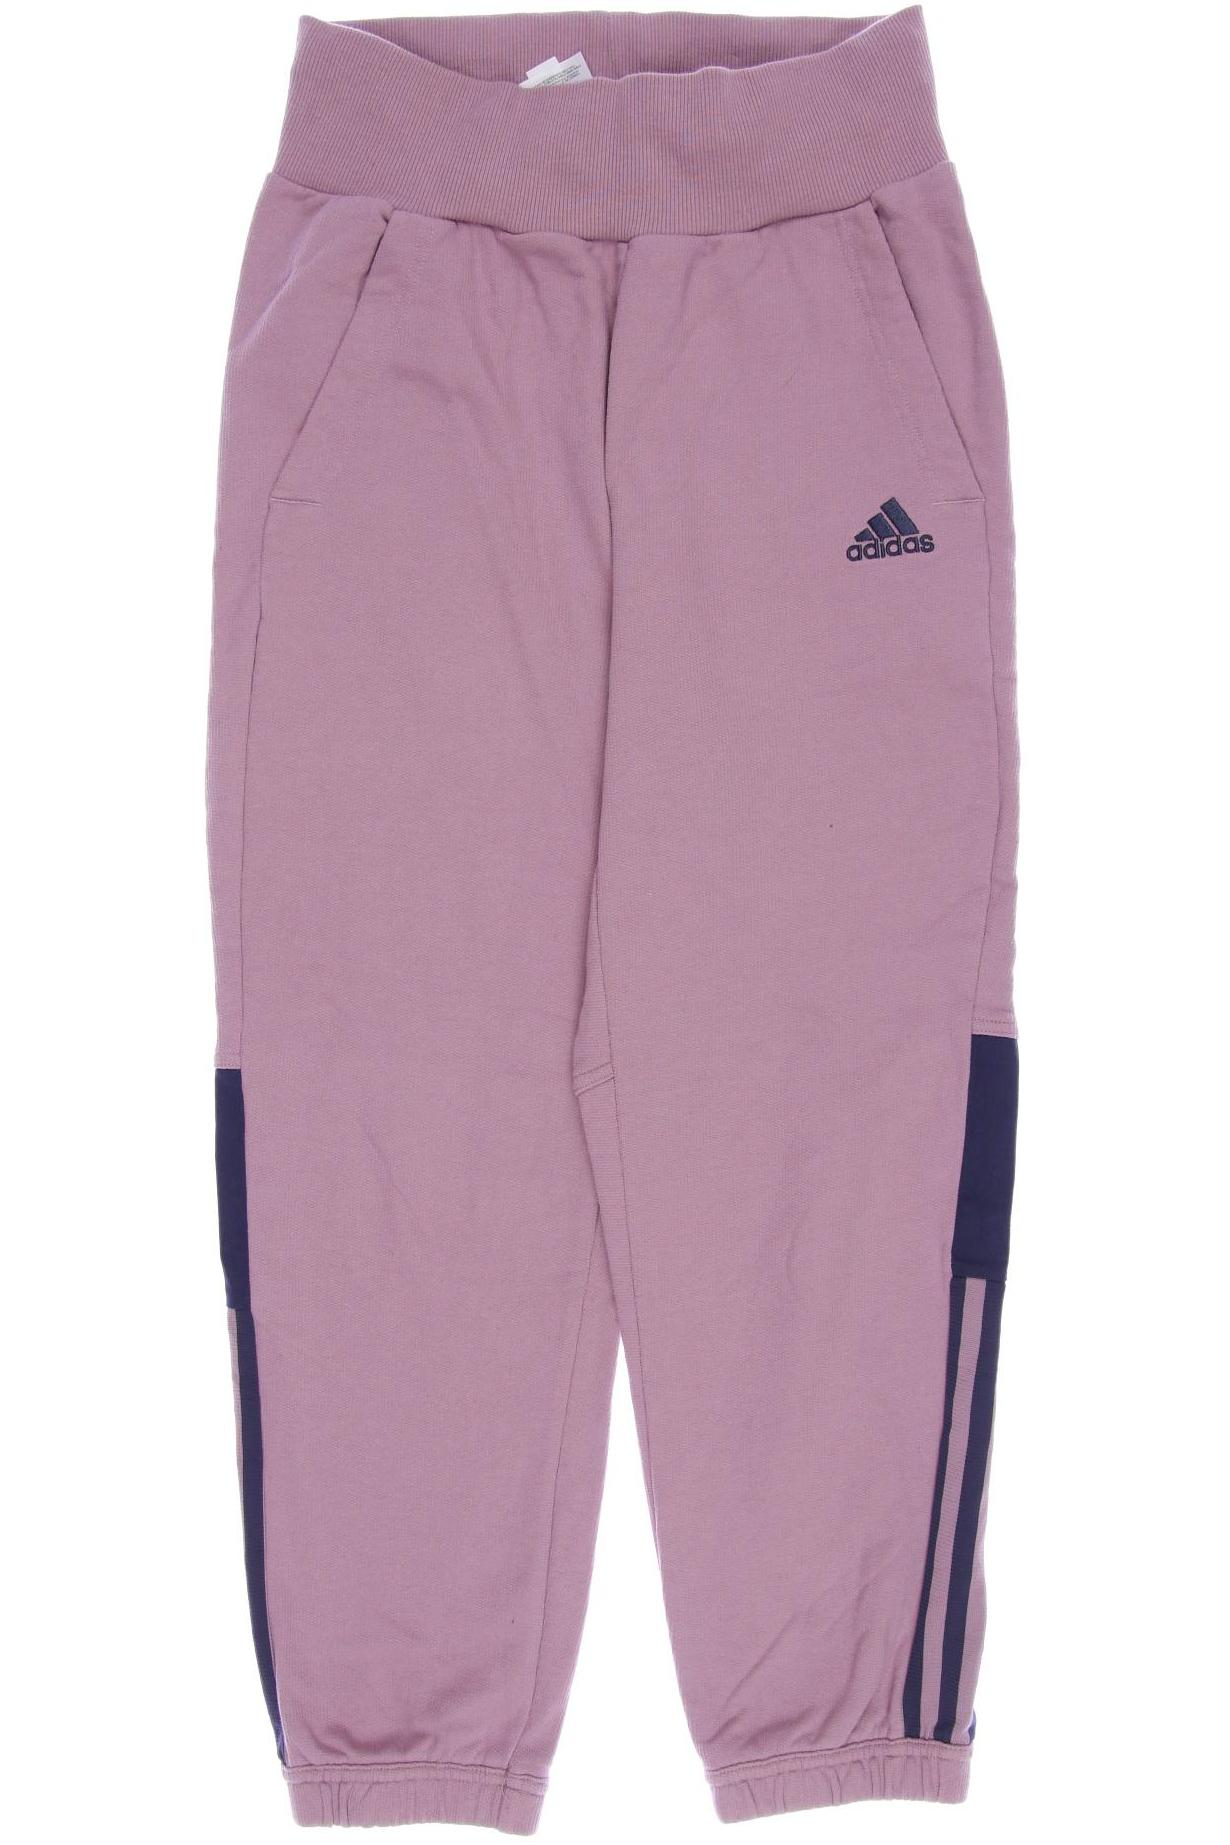 adidas Damen Stoffhose, pink von Adidas